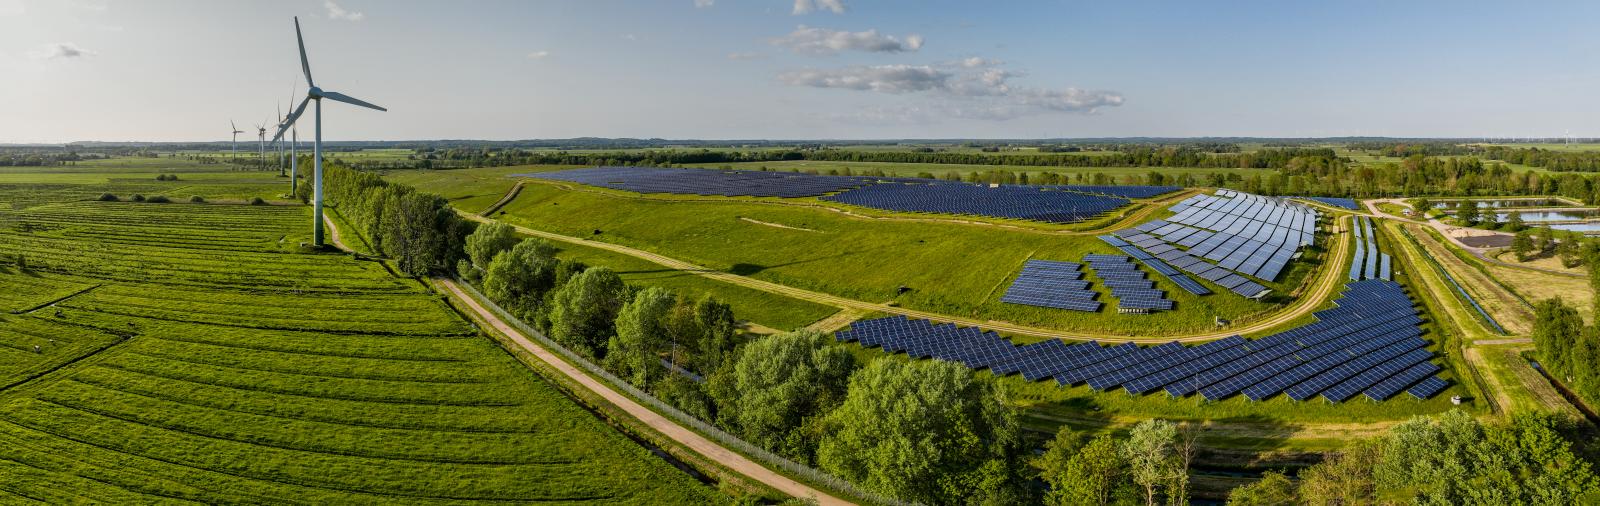 Solar panels farm built on a waste dump and wind turbine farm